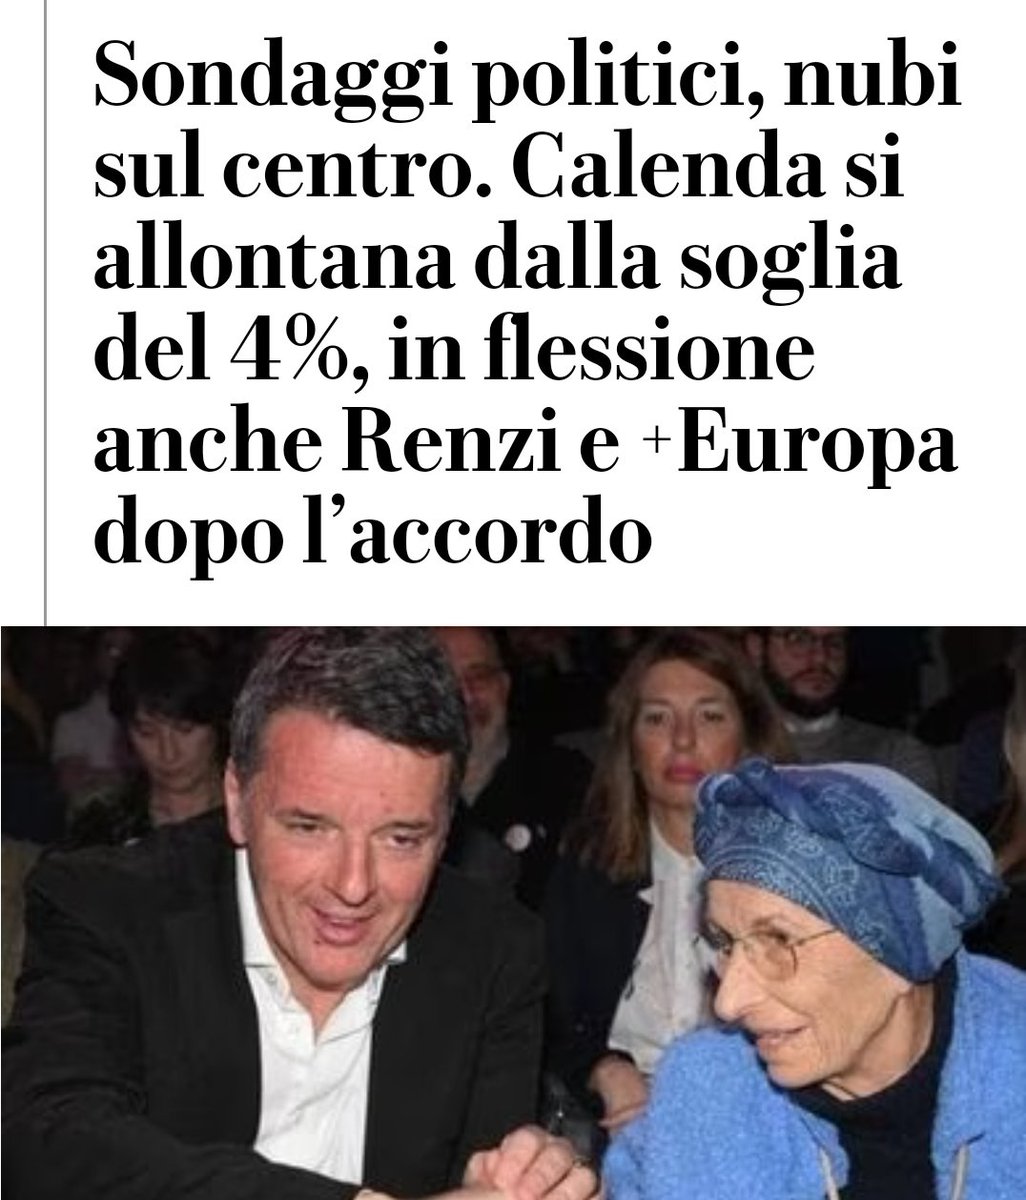 Forse si autopercepiscono, ma se #Renzi e la #Bonino sono di centro, Cicciolina è vergine. E noi elettori per fortuna non siamo stupidi.